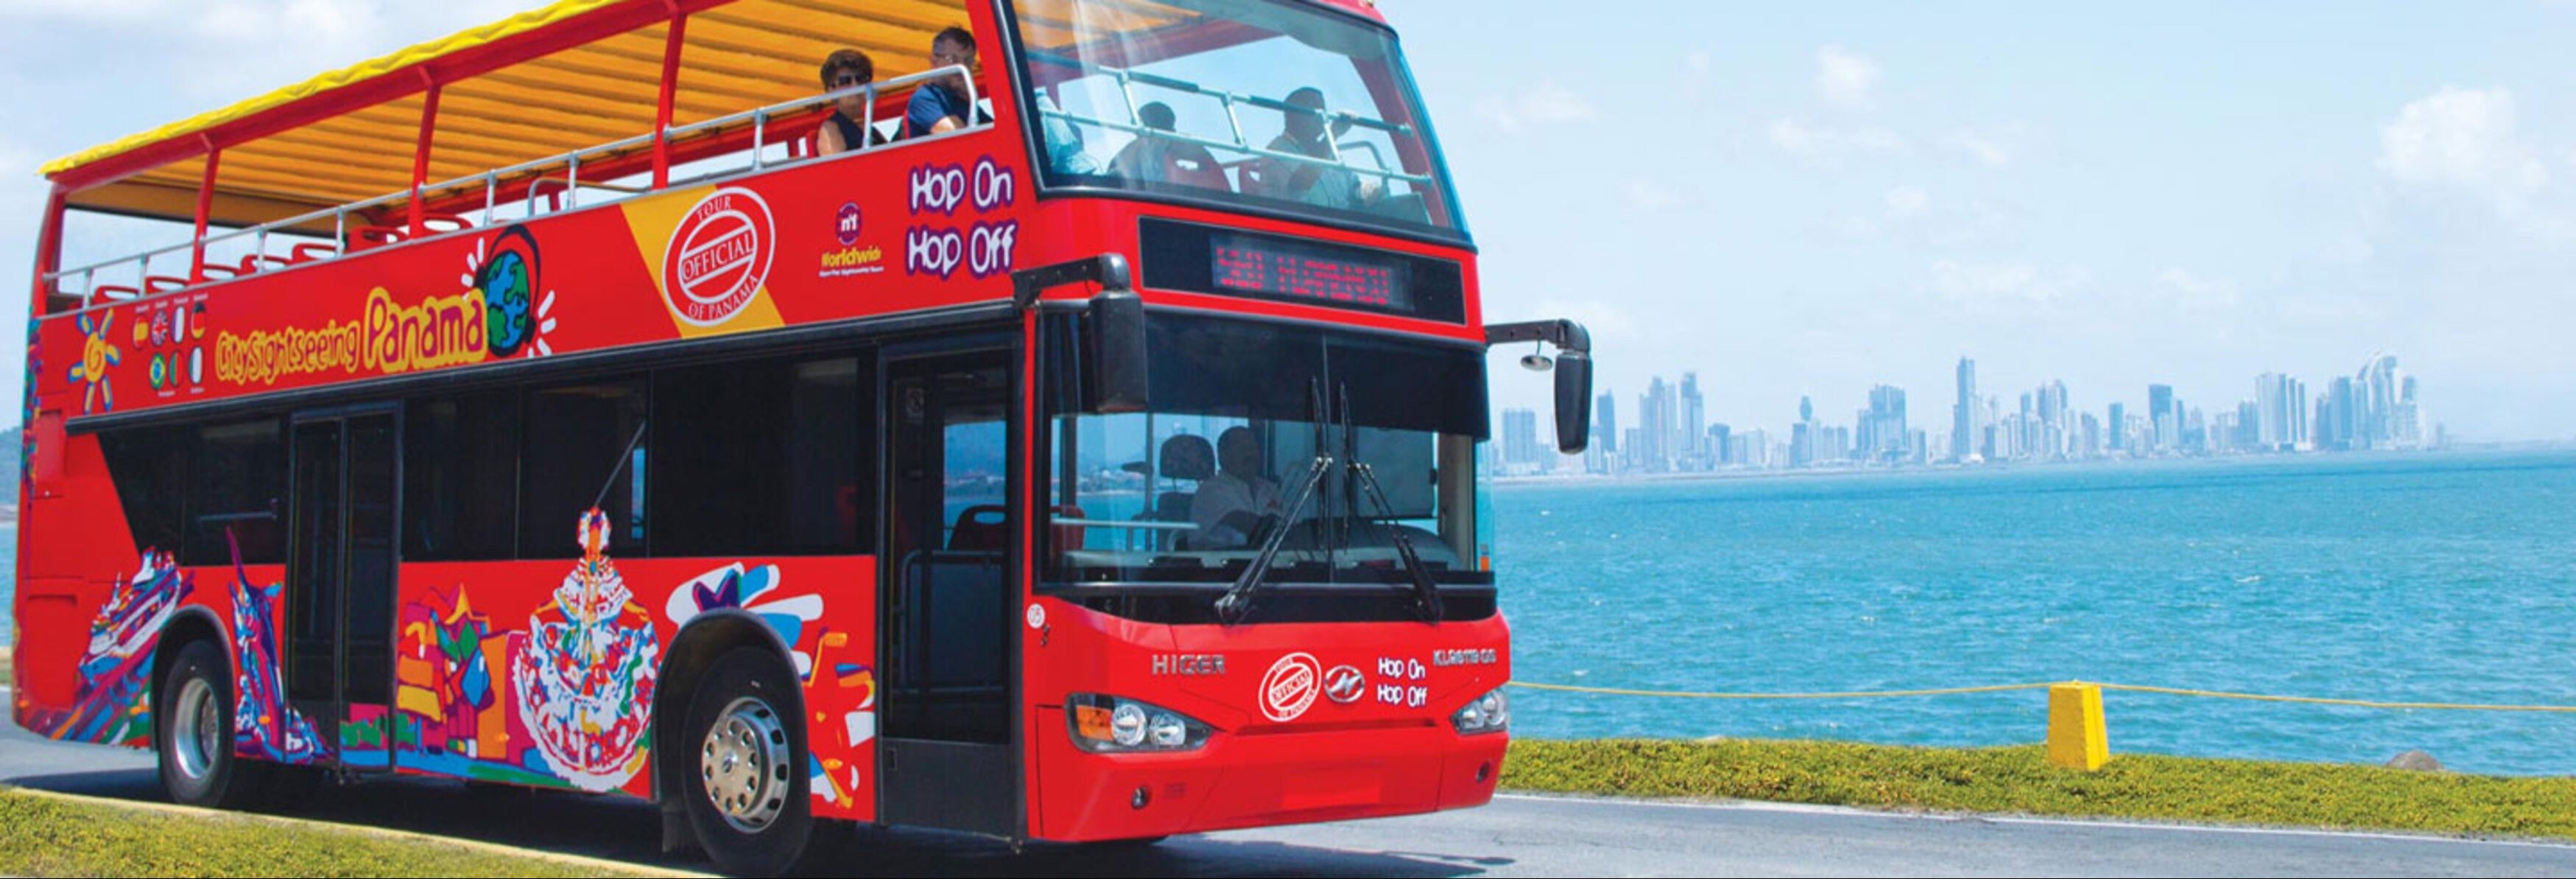 Ônibus turístico da Cidade do Panamá